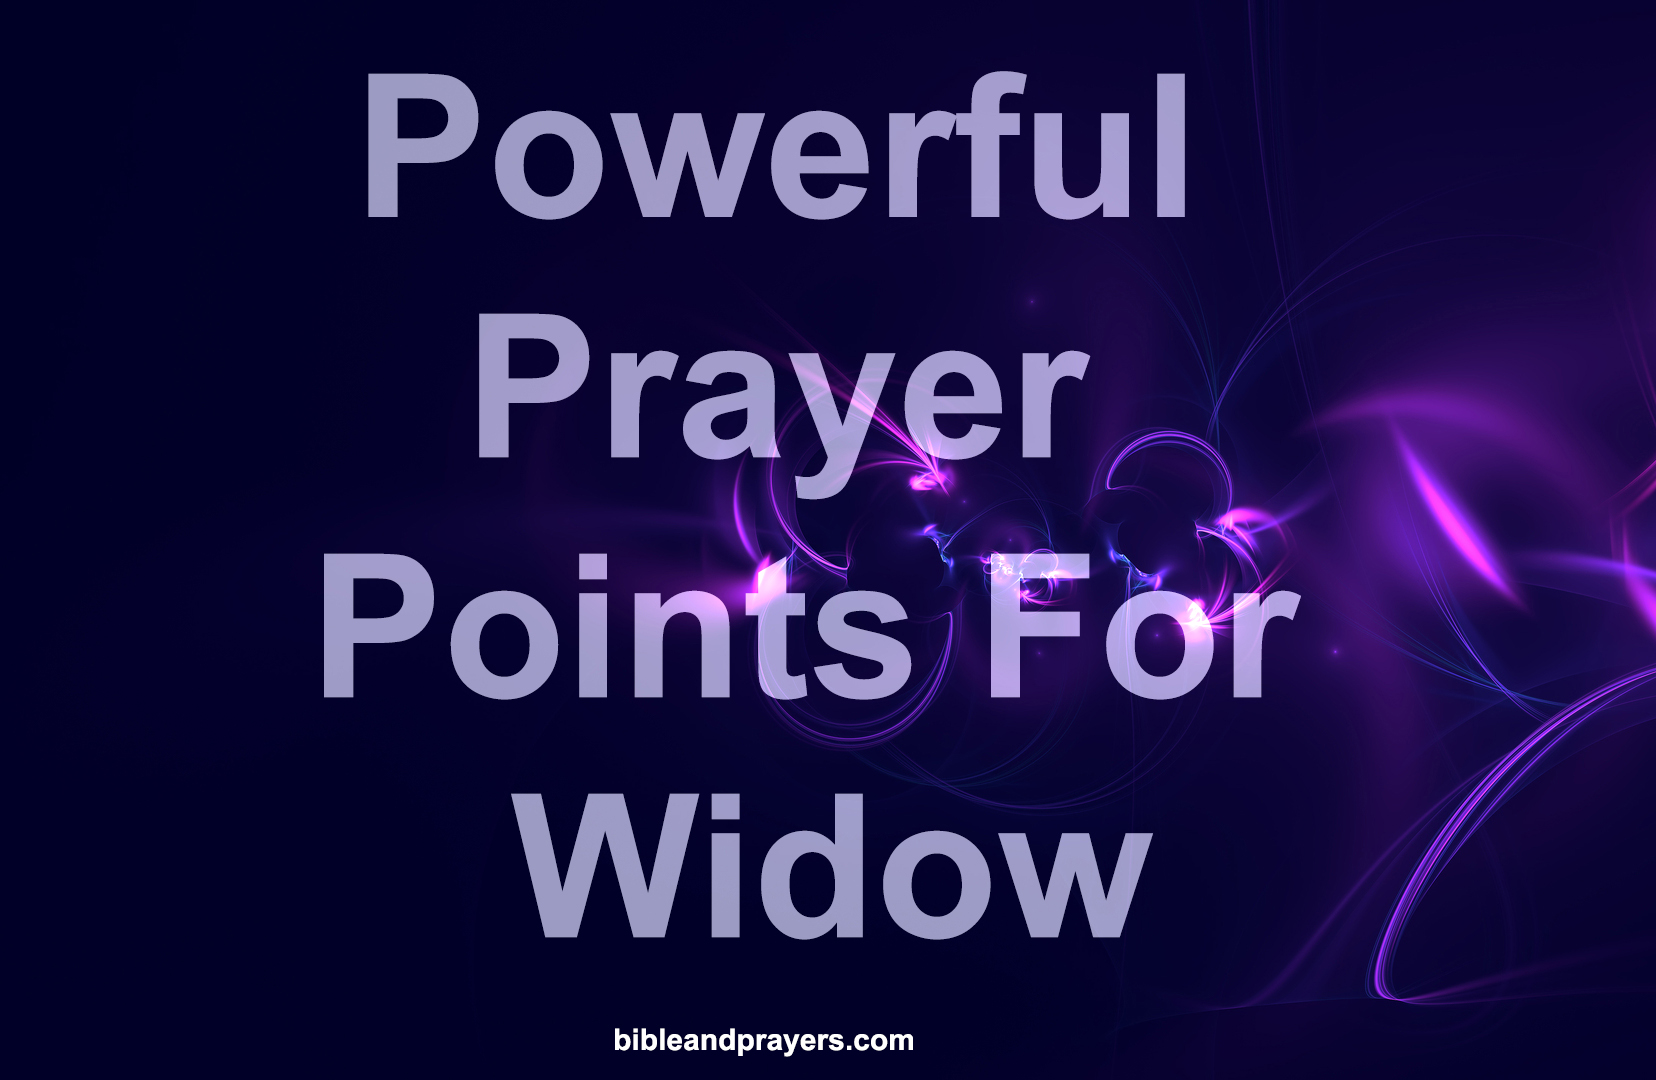 Powerful Prayer Points For Widow